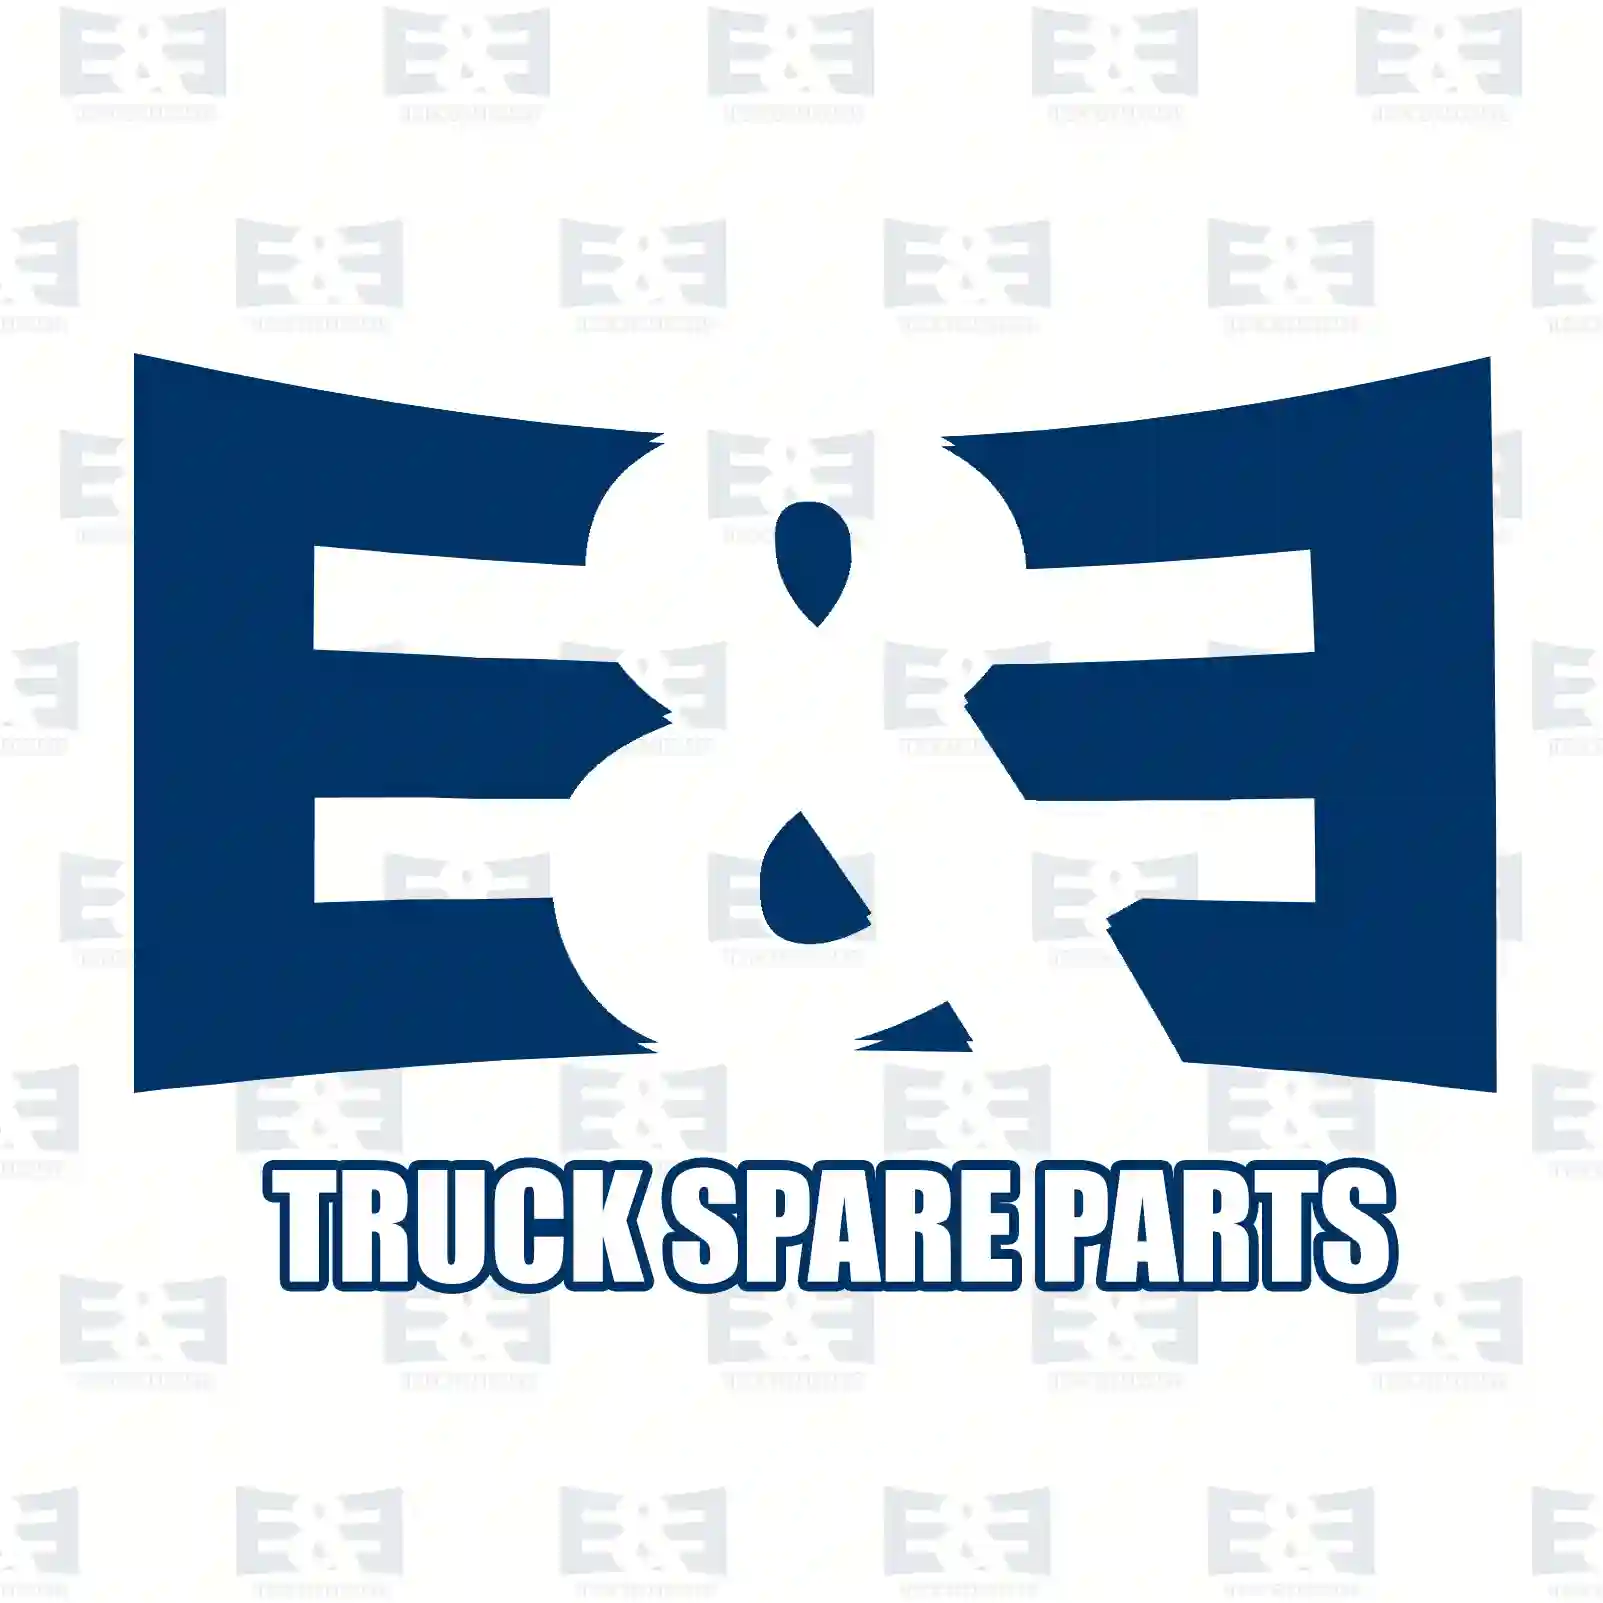 Brake caliper, 2E2296067, 5001019720, 5001019720, 68033193, 68033255, LRG659, MXC9308022 ||  2E2296067 E&E Truck Spare Parts | Truck Spare Parts, Auotomotive Spare Parts Brake caliper, 2E2296067, 5001019720, 5001019720, 68033193, 68033255, LRG659, MXC9308022 ||  2E2296067 E&E Truck Spare Parts | Truck Spare Parts, Auotomotive Spare Parts